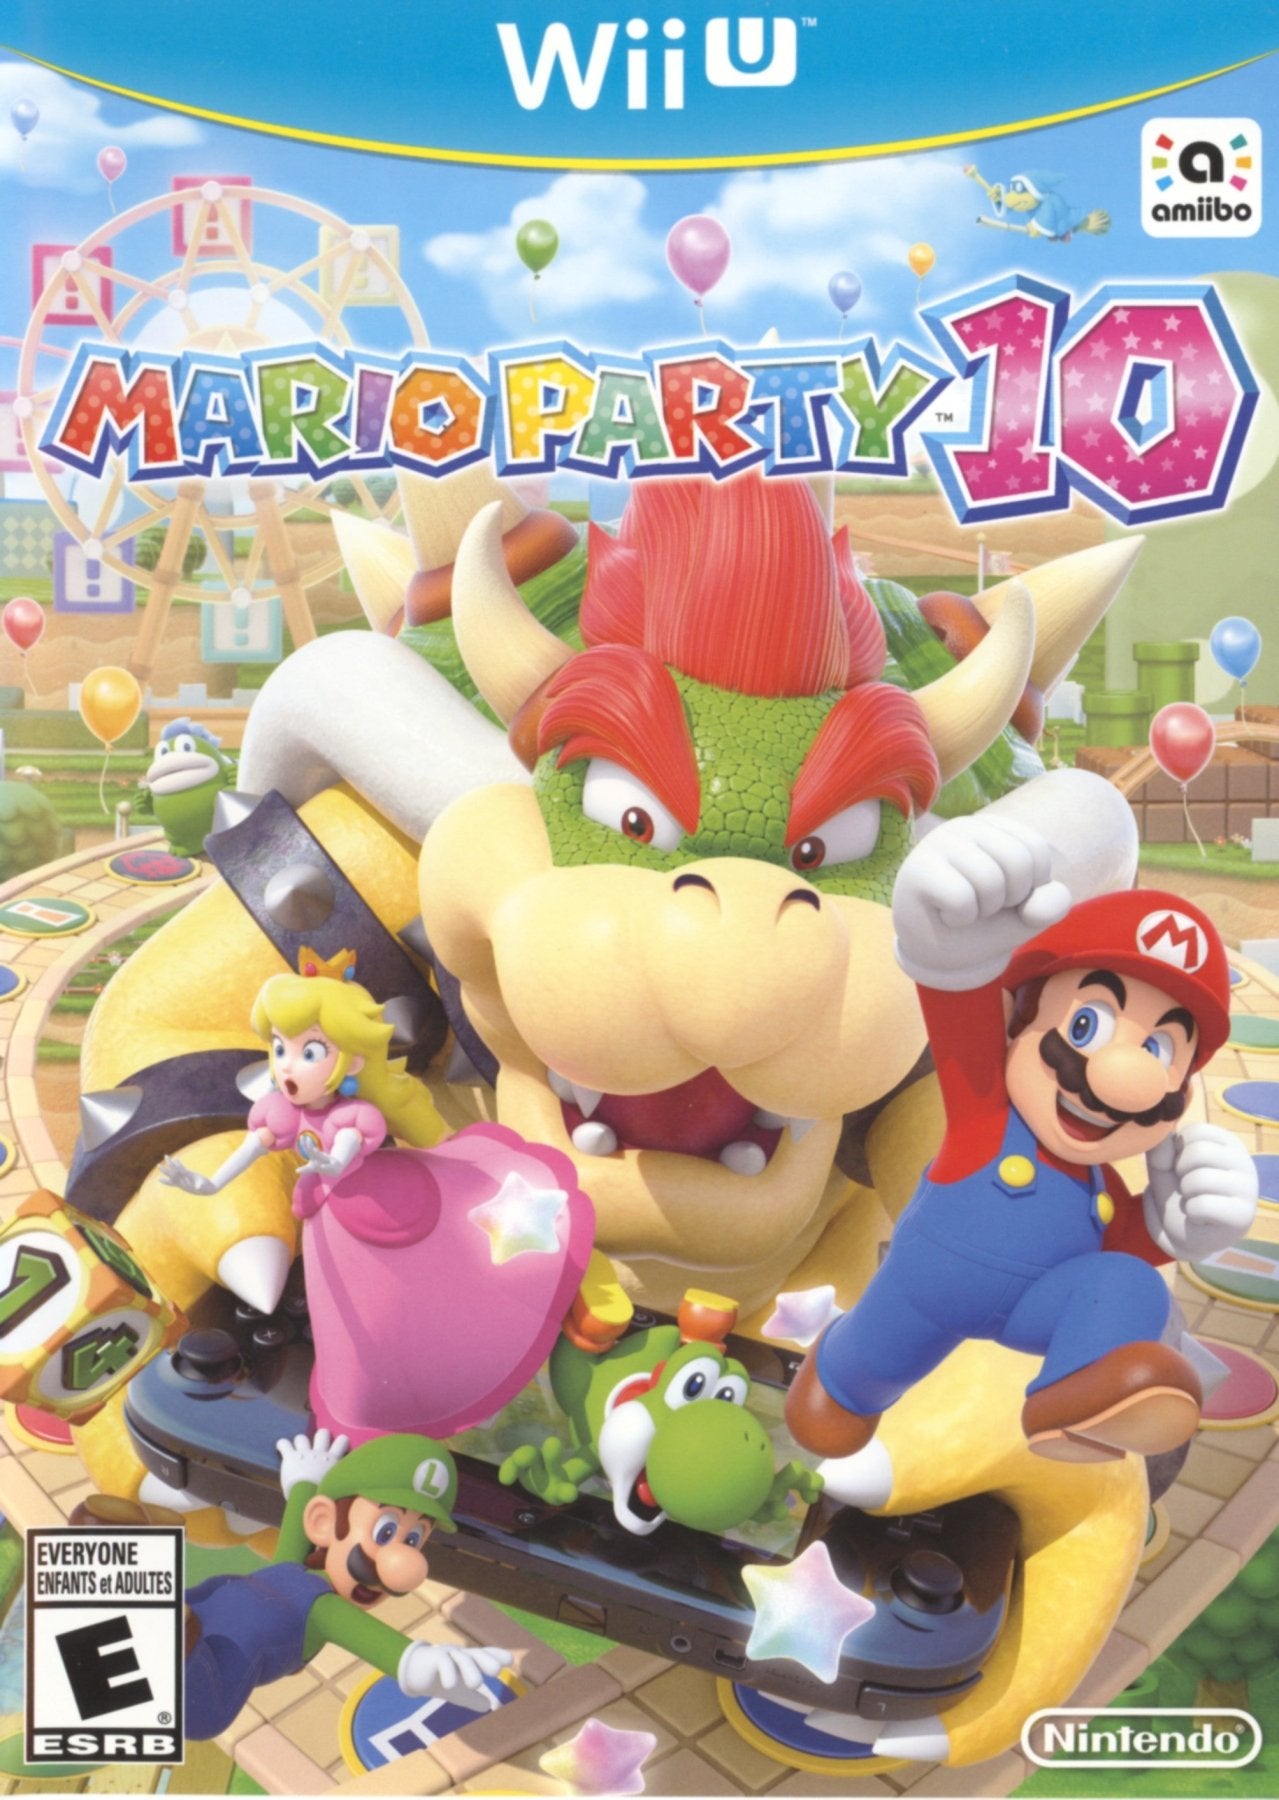 Mario Party 10 - Wii U - Retro Island Gaming